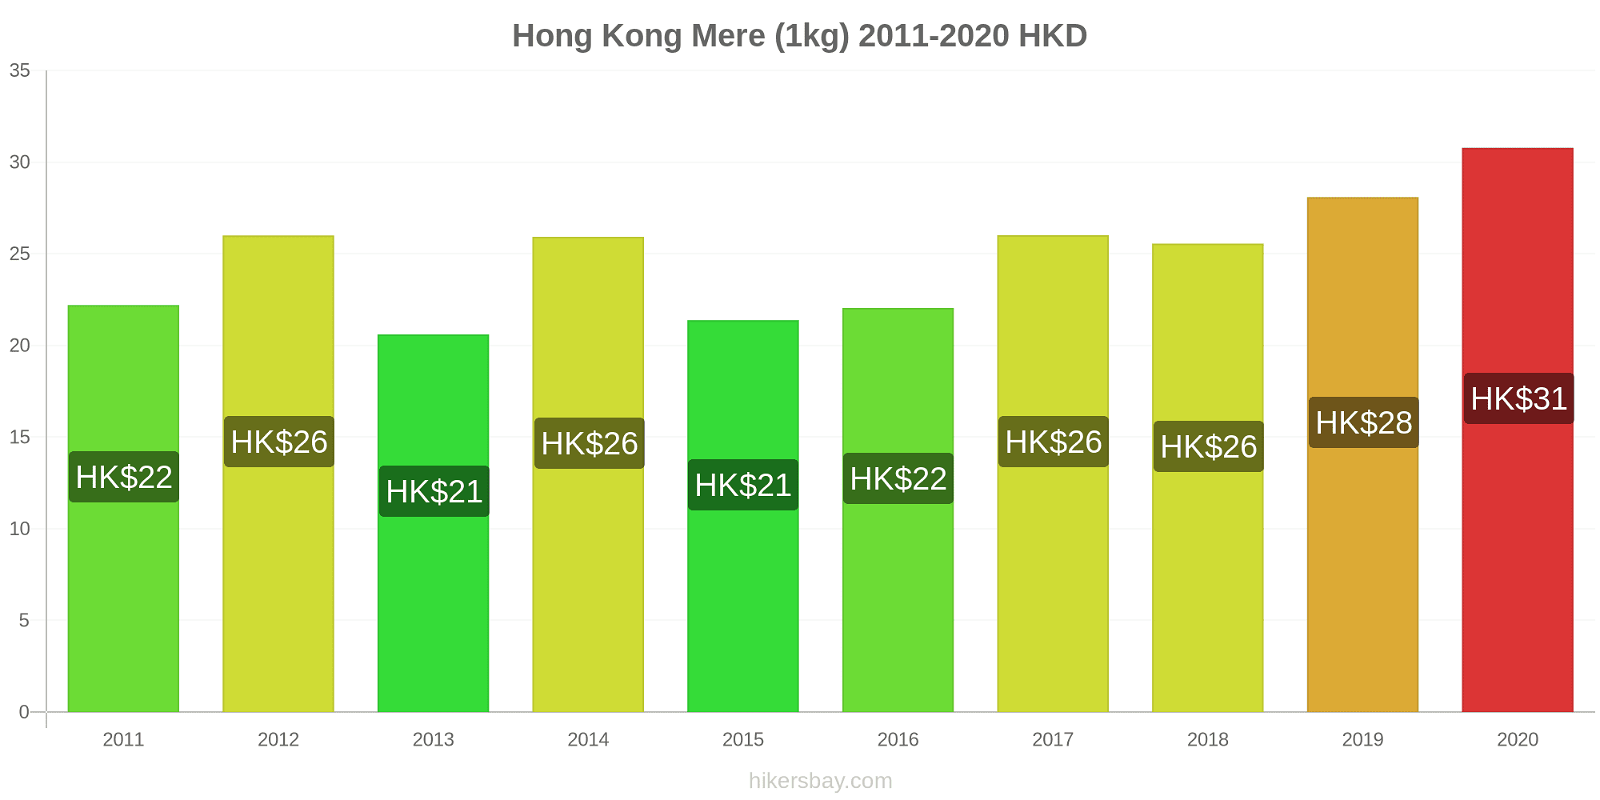 Hong Kong modificări de preț Mere (1kg) hikersbay.com